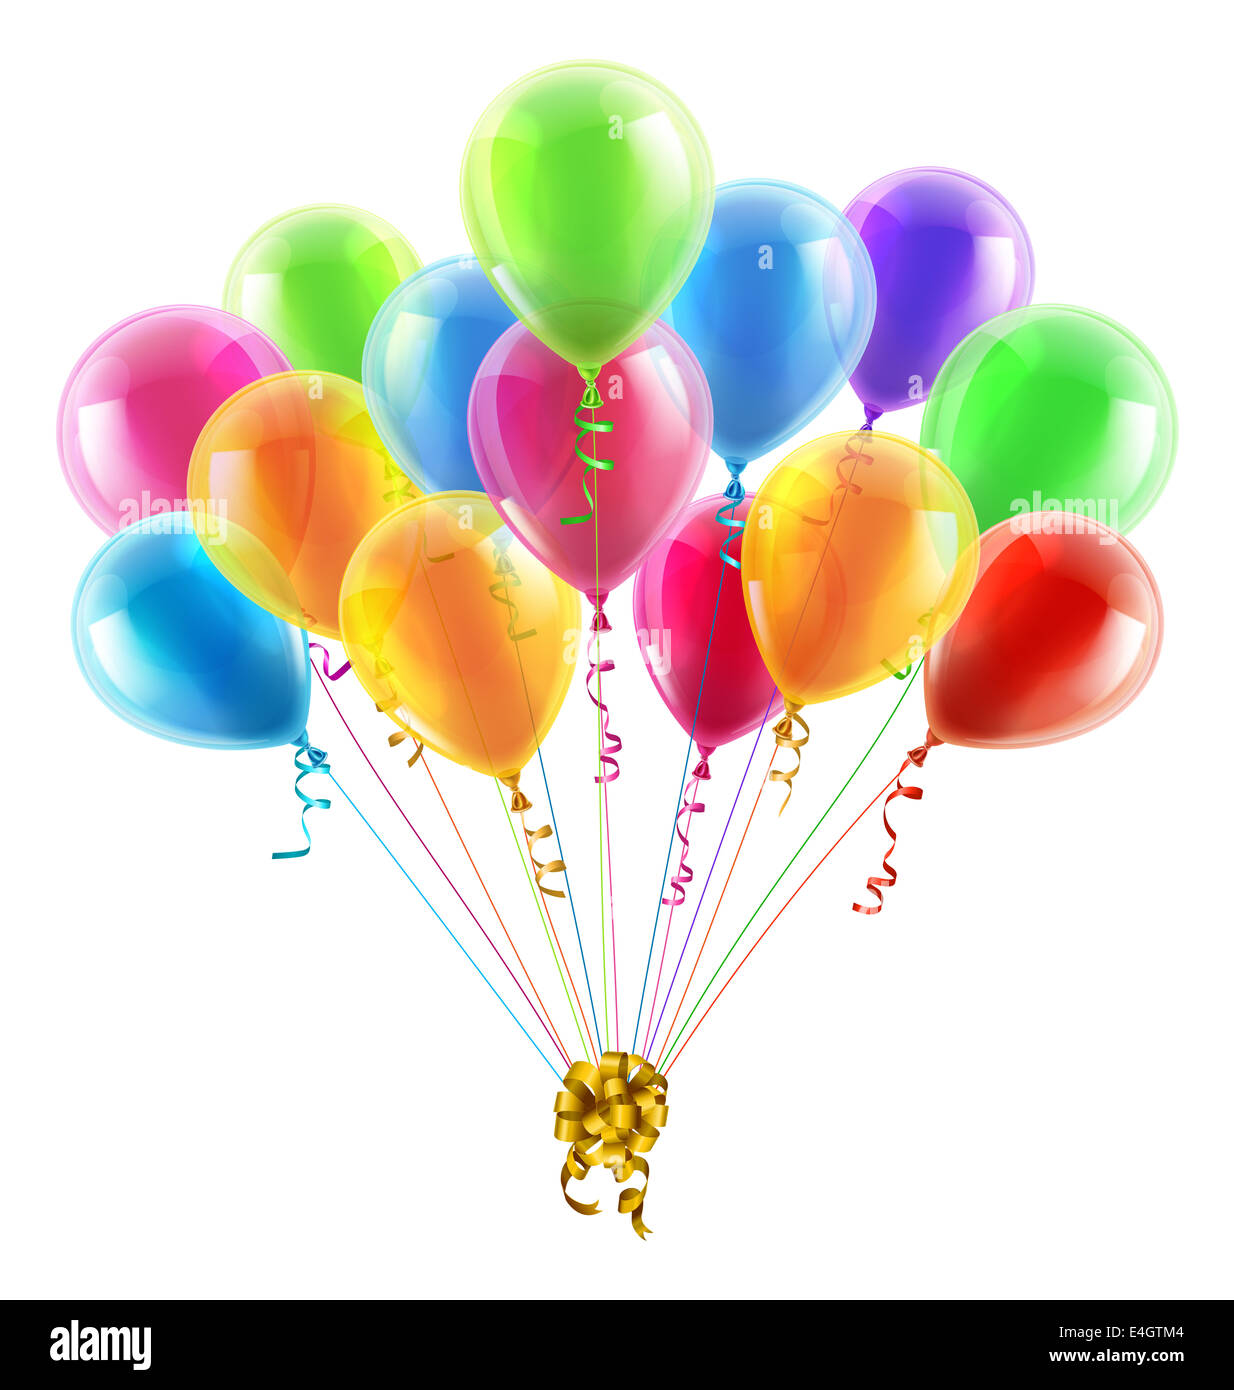 Ein Beispiel für eine Reihe von bunten Geburtstag oder Party Luftballons mit Bändern zusammengebunden mit einer großen goldenen Bogen Stockfoto